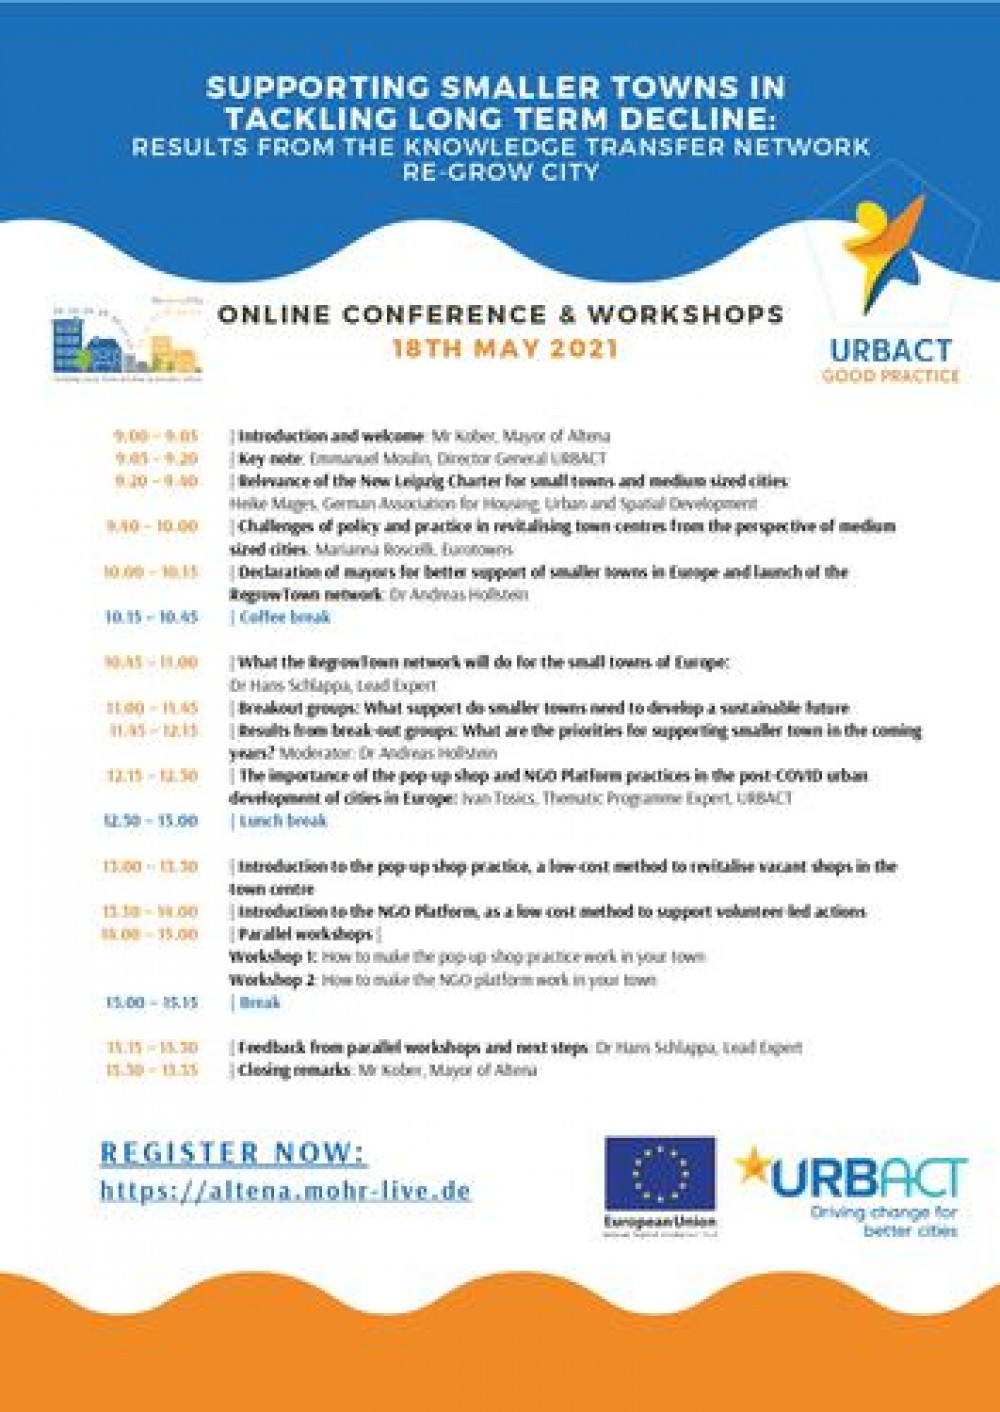 La xarxa de transferència URBACT Re-growCity organitza una conferència sobre com afrontar el declivi de petites i mitjanes ciutats europees